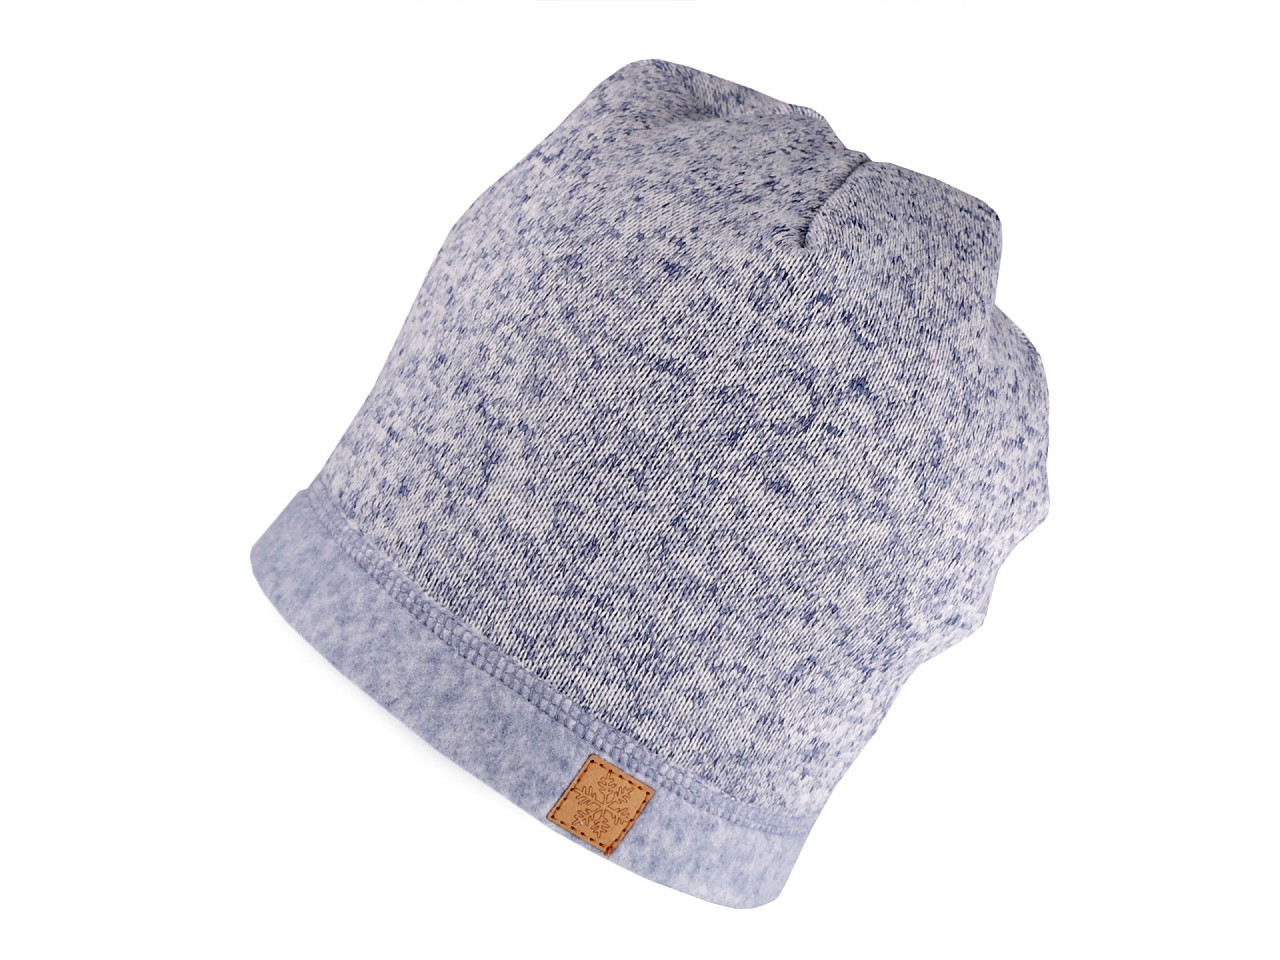 Čepice ze zateplené svetroviny, barva 1 (50-58 cm) šedá nejsvětlější melír